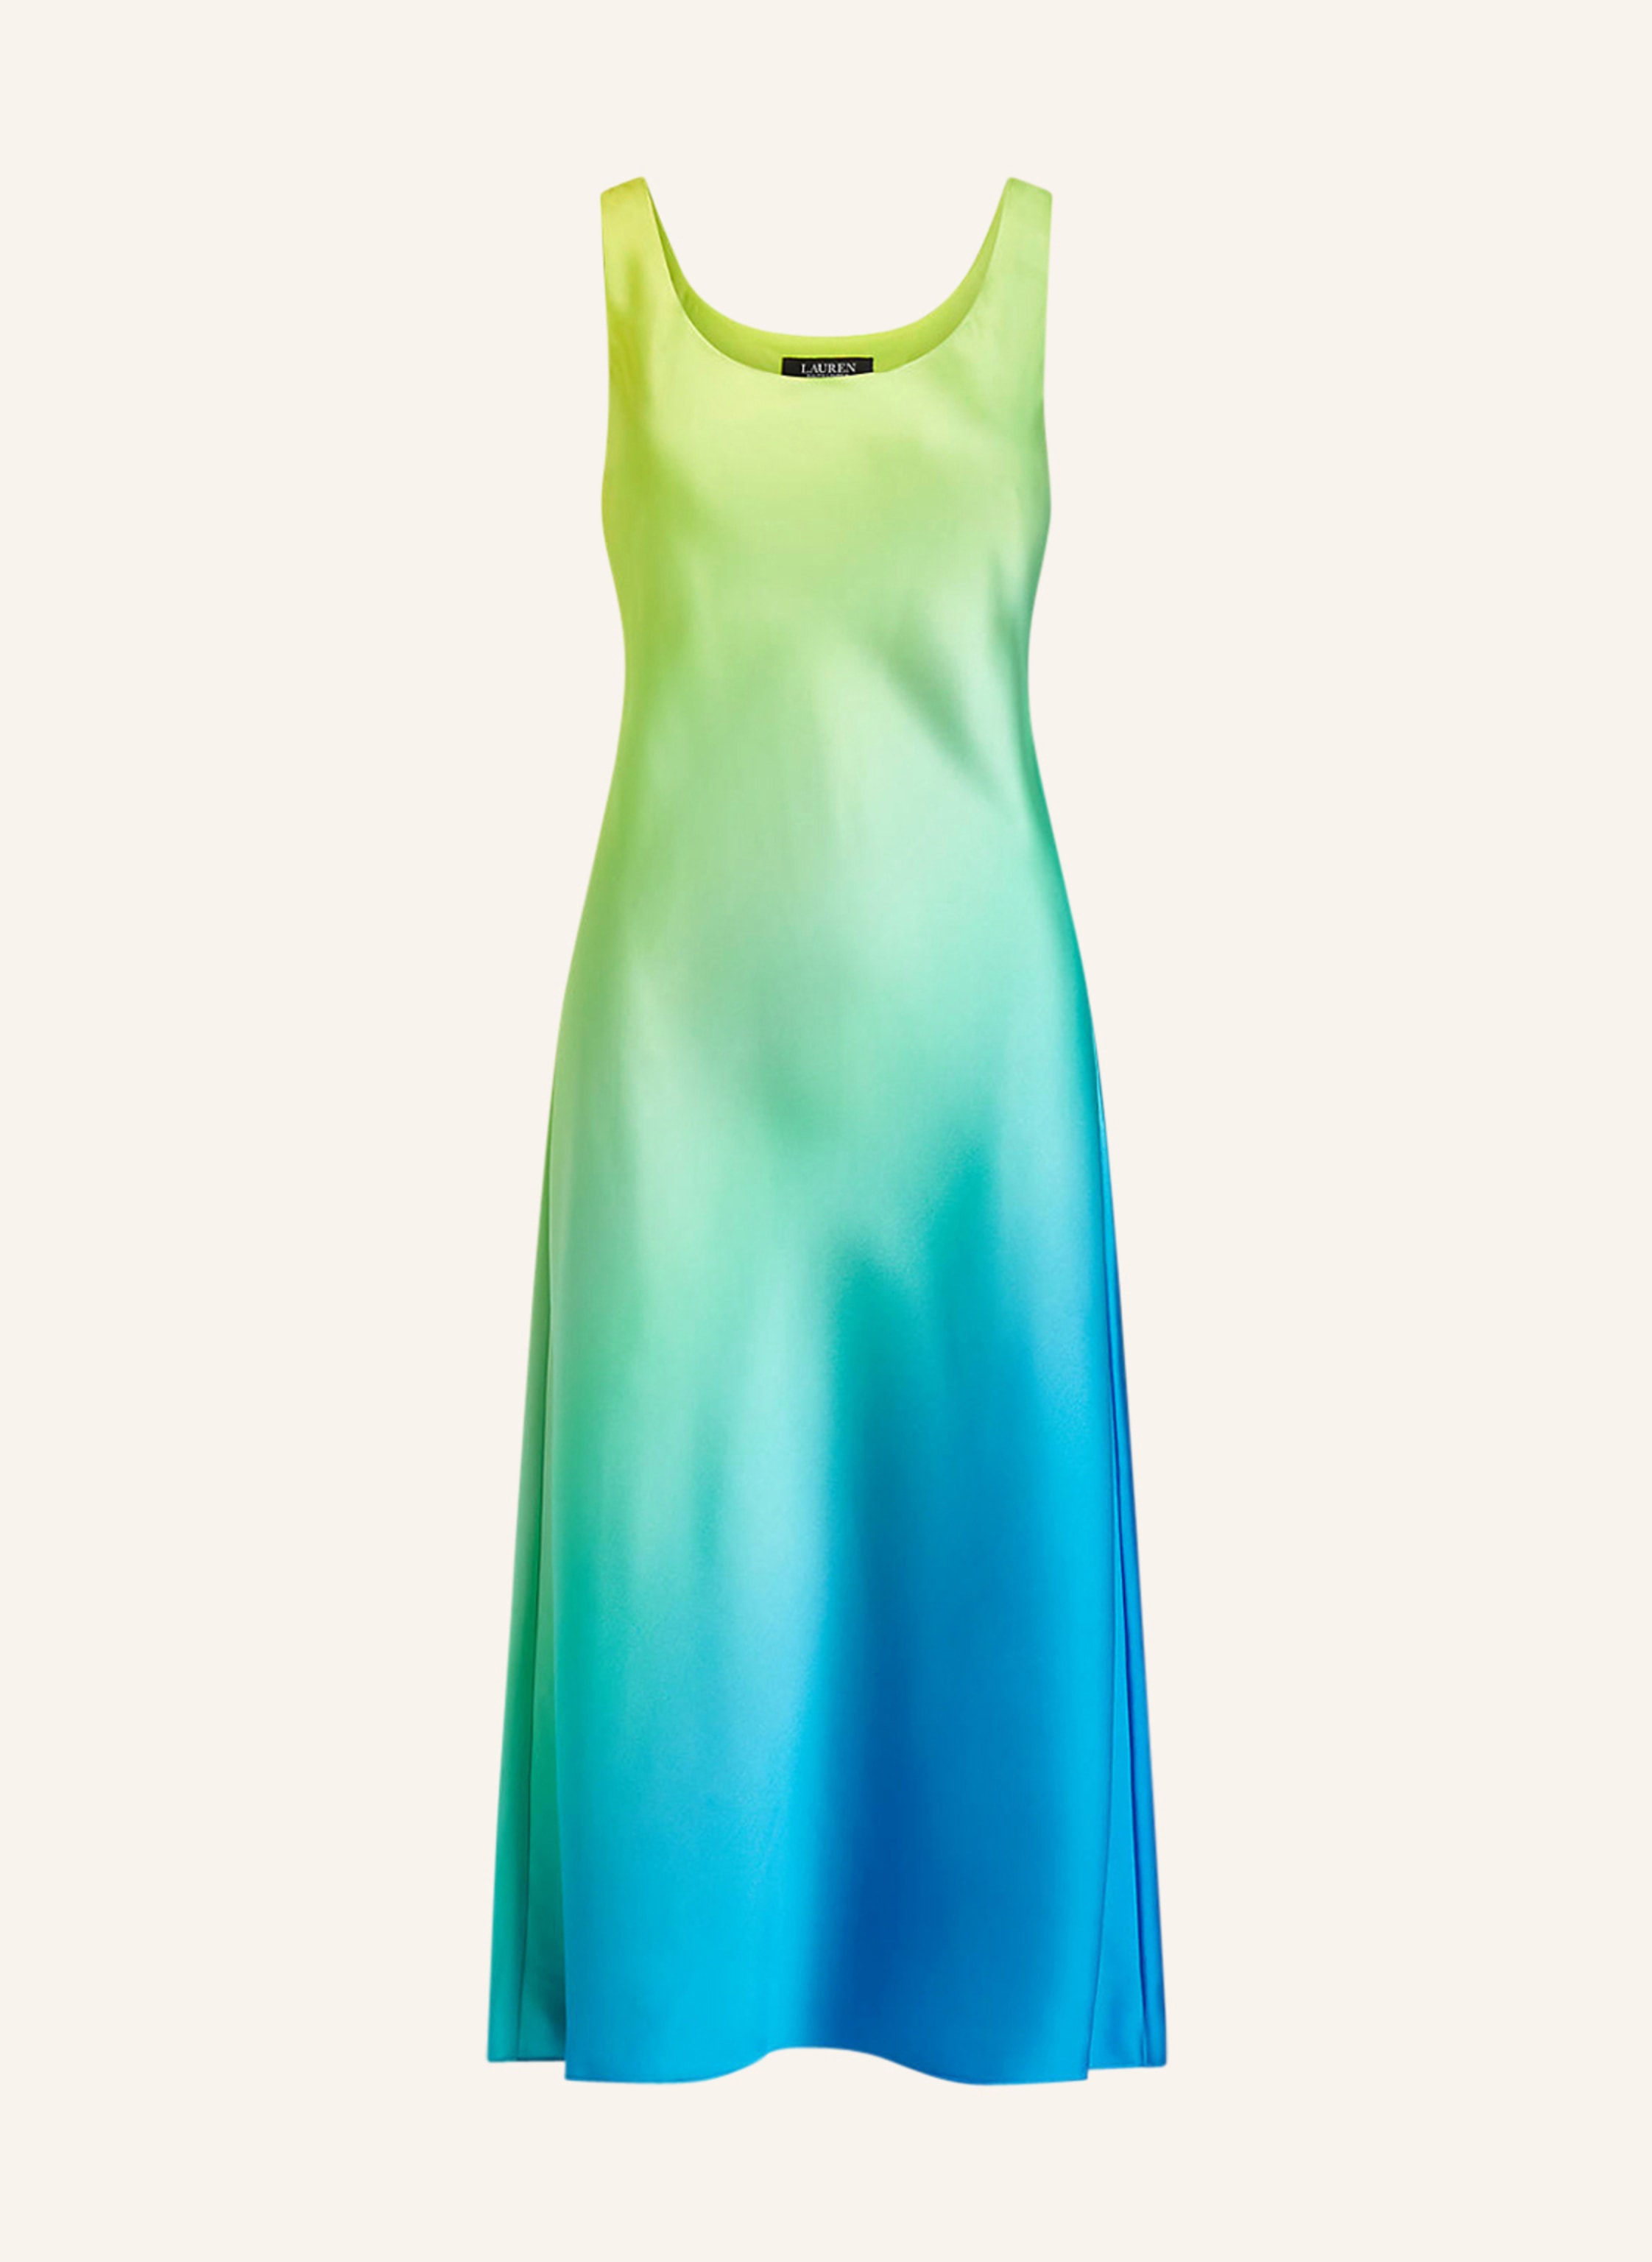 LAUREN RALPH LAUREN Satin dress in neon green/ neon blue/ yellow |  Breuninger